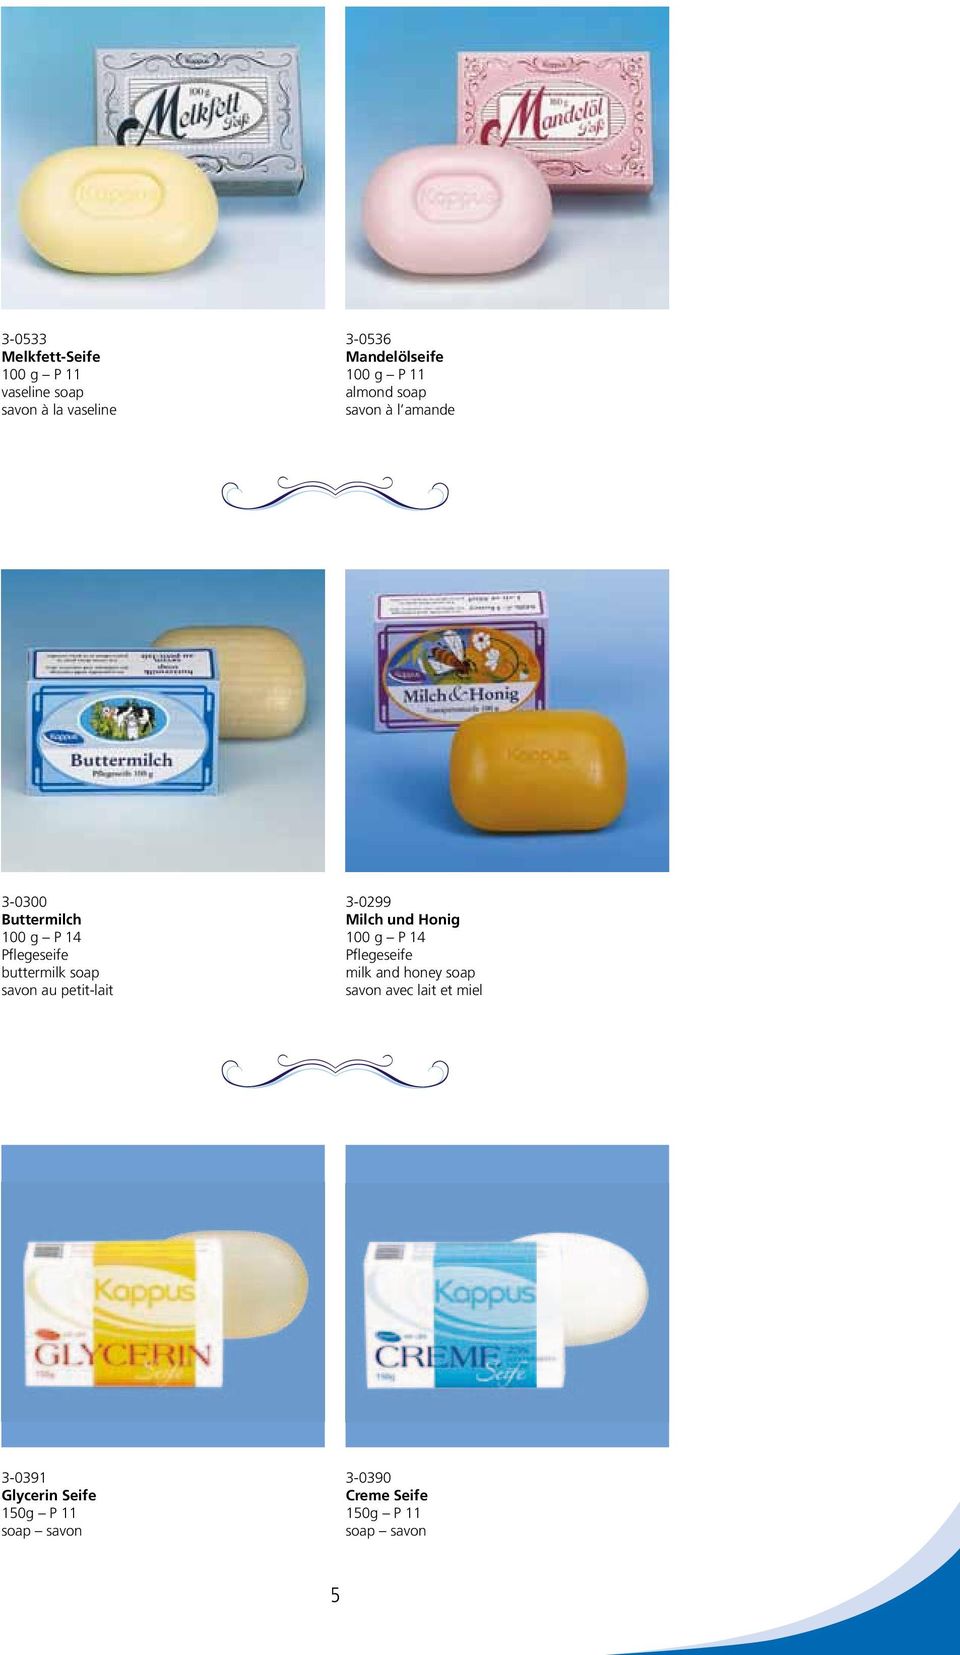 savon au petit-lait 3-0299 Milch und Honig 100 g P 14 Pflegeseife milk and honey soap savon